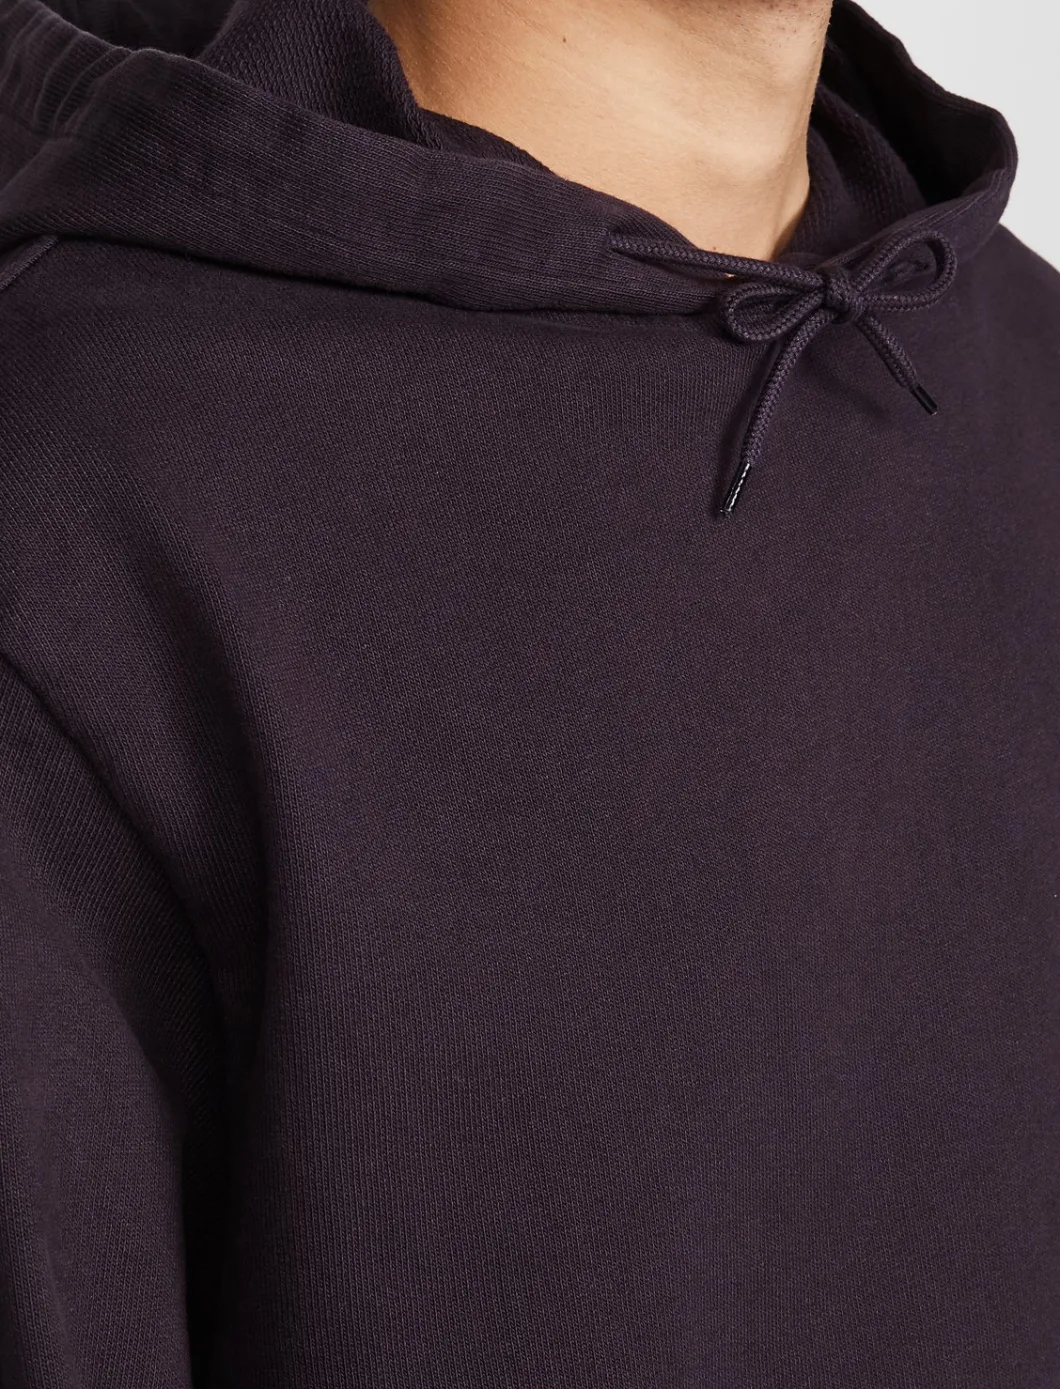 Factory Custom Printing Sports Oversized Streetwear Hoodie for Men Pullover Sweatshirt